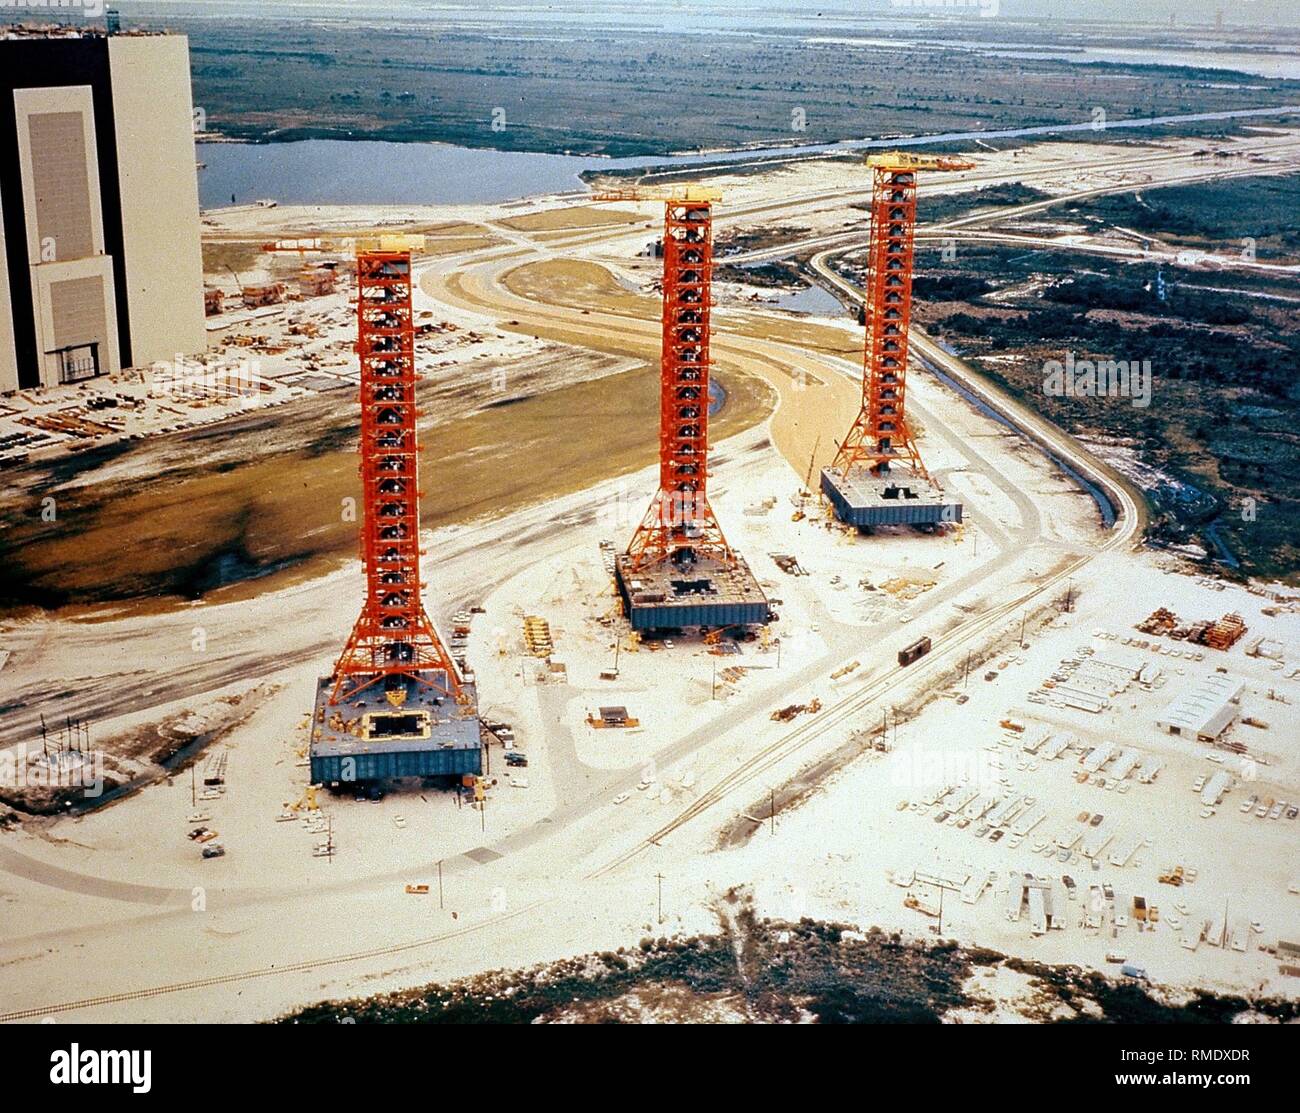 Vista del John F. Kennedy Space Center il lancio del veicolo spaziale del sito con i tre mobile lancio del razzo elettrodi usati per il programma Apollo. A sinistra sullo sfondo il gruppo di veicoli per la costruzione di navicelle spaziali. Foto non datata, probabilmente negli anni ottanta. Foto Stock